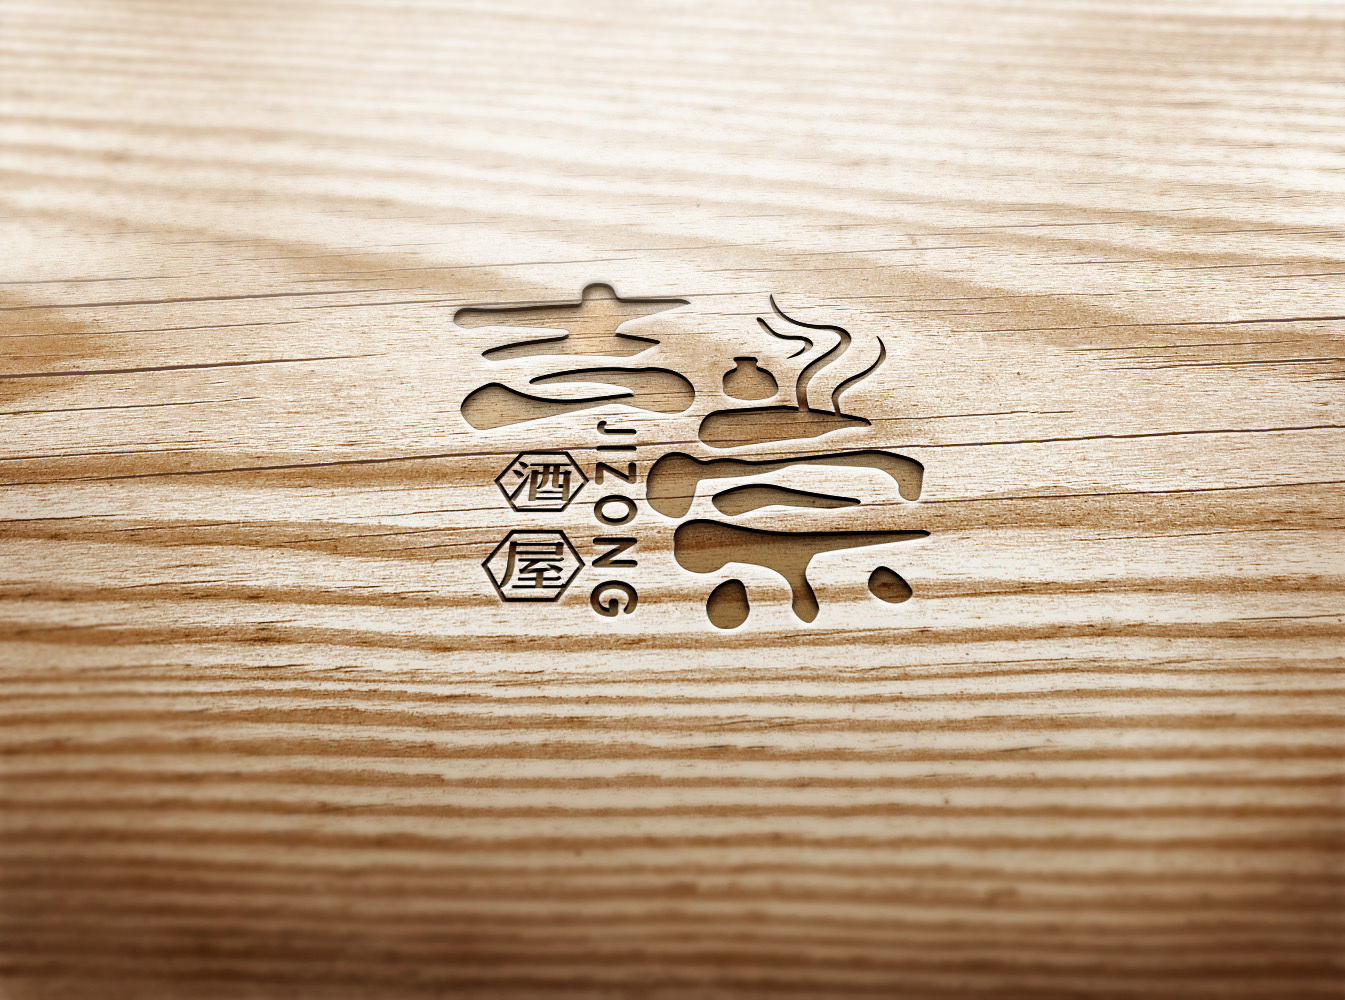 吉宗酒屋logo设计图3